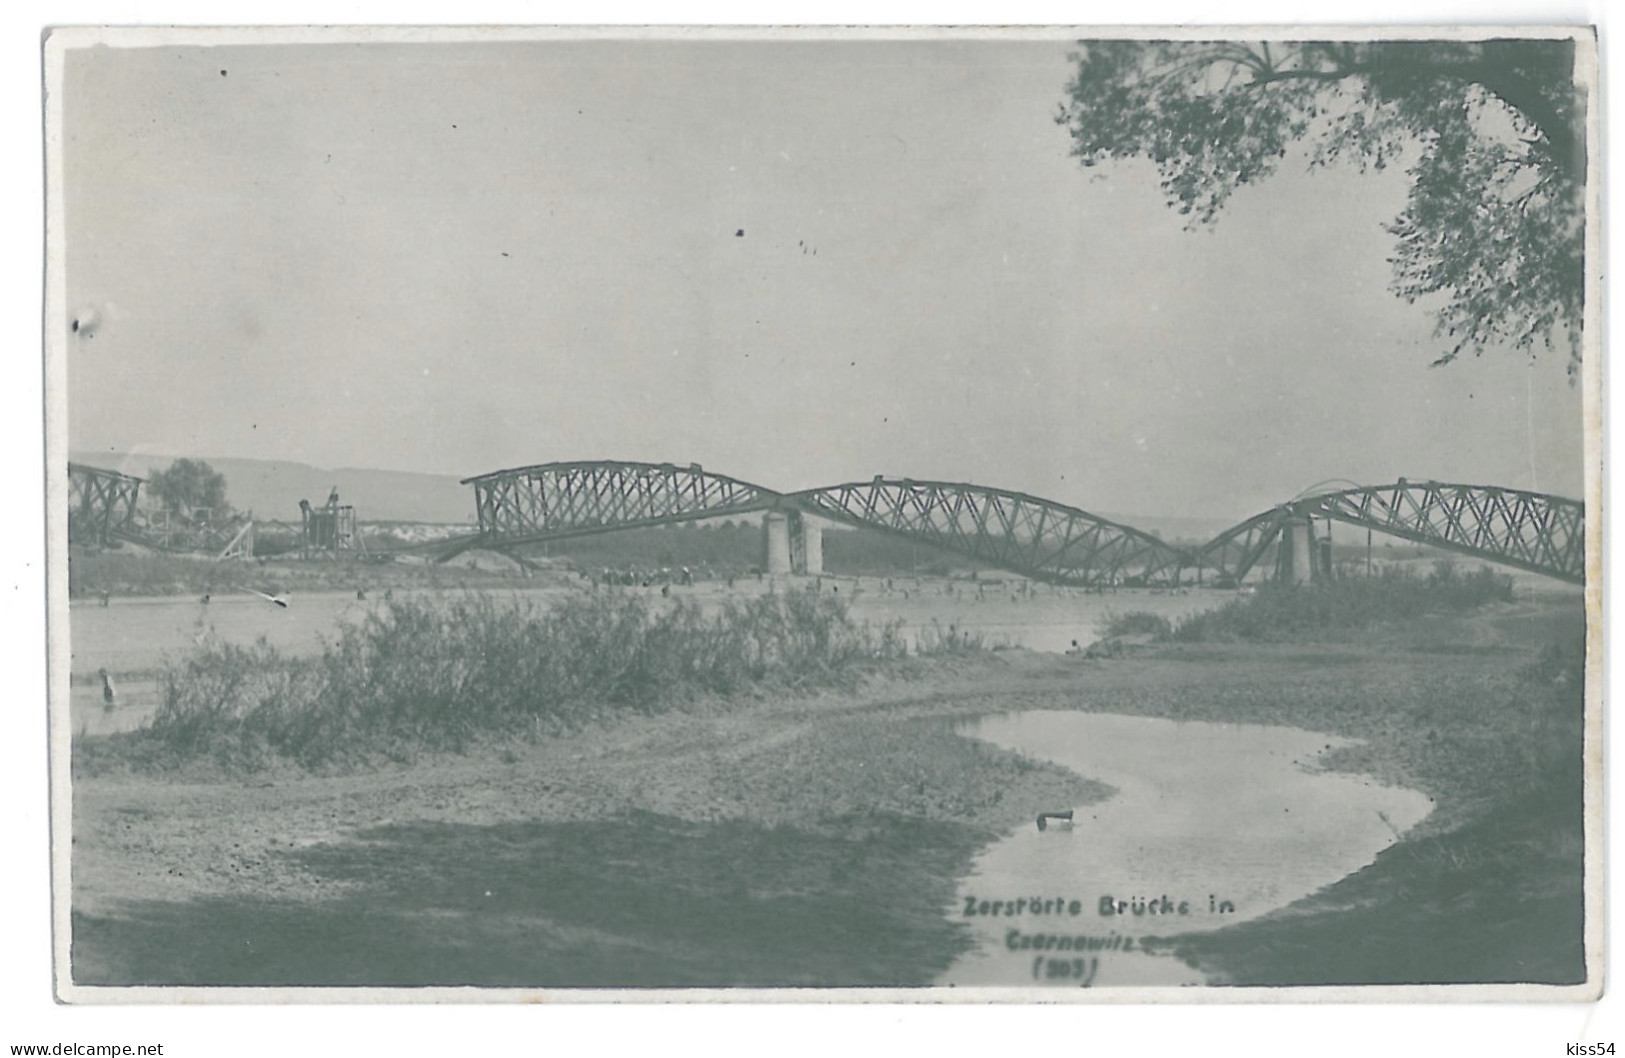 UK 60 - 15328 CZERNOWICZ, Bridge Destroyded, Ukraine - Old Postcard, Real PHOTO - Unused - Oekraïne